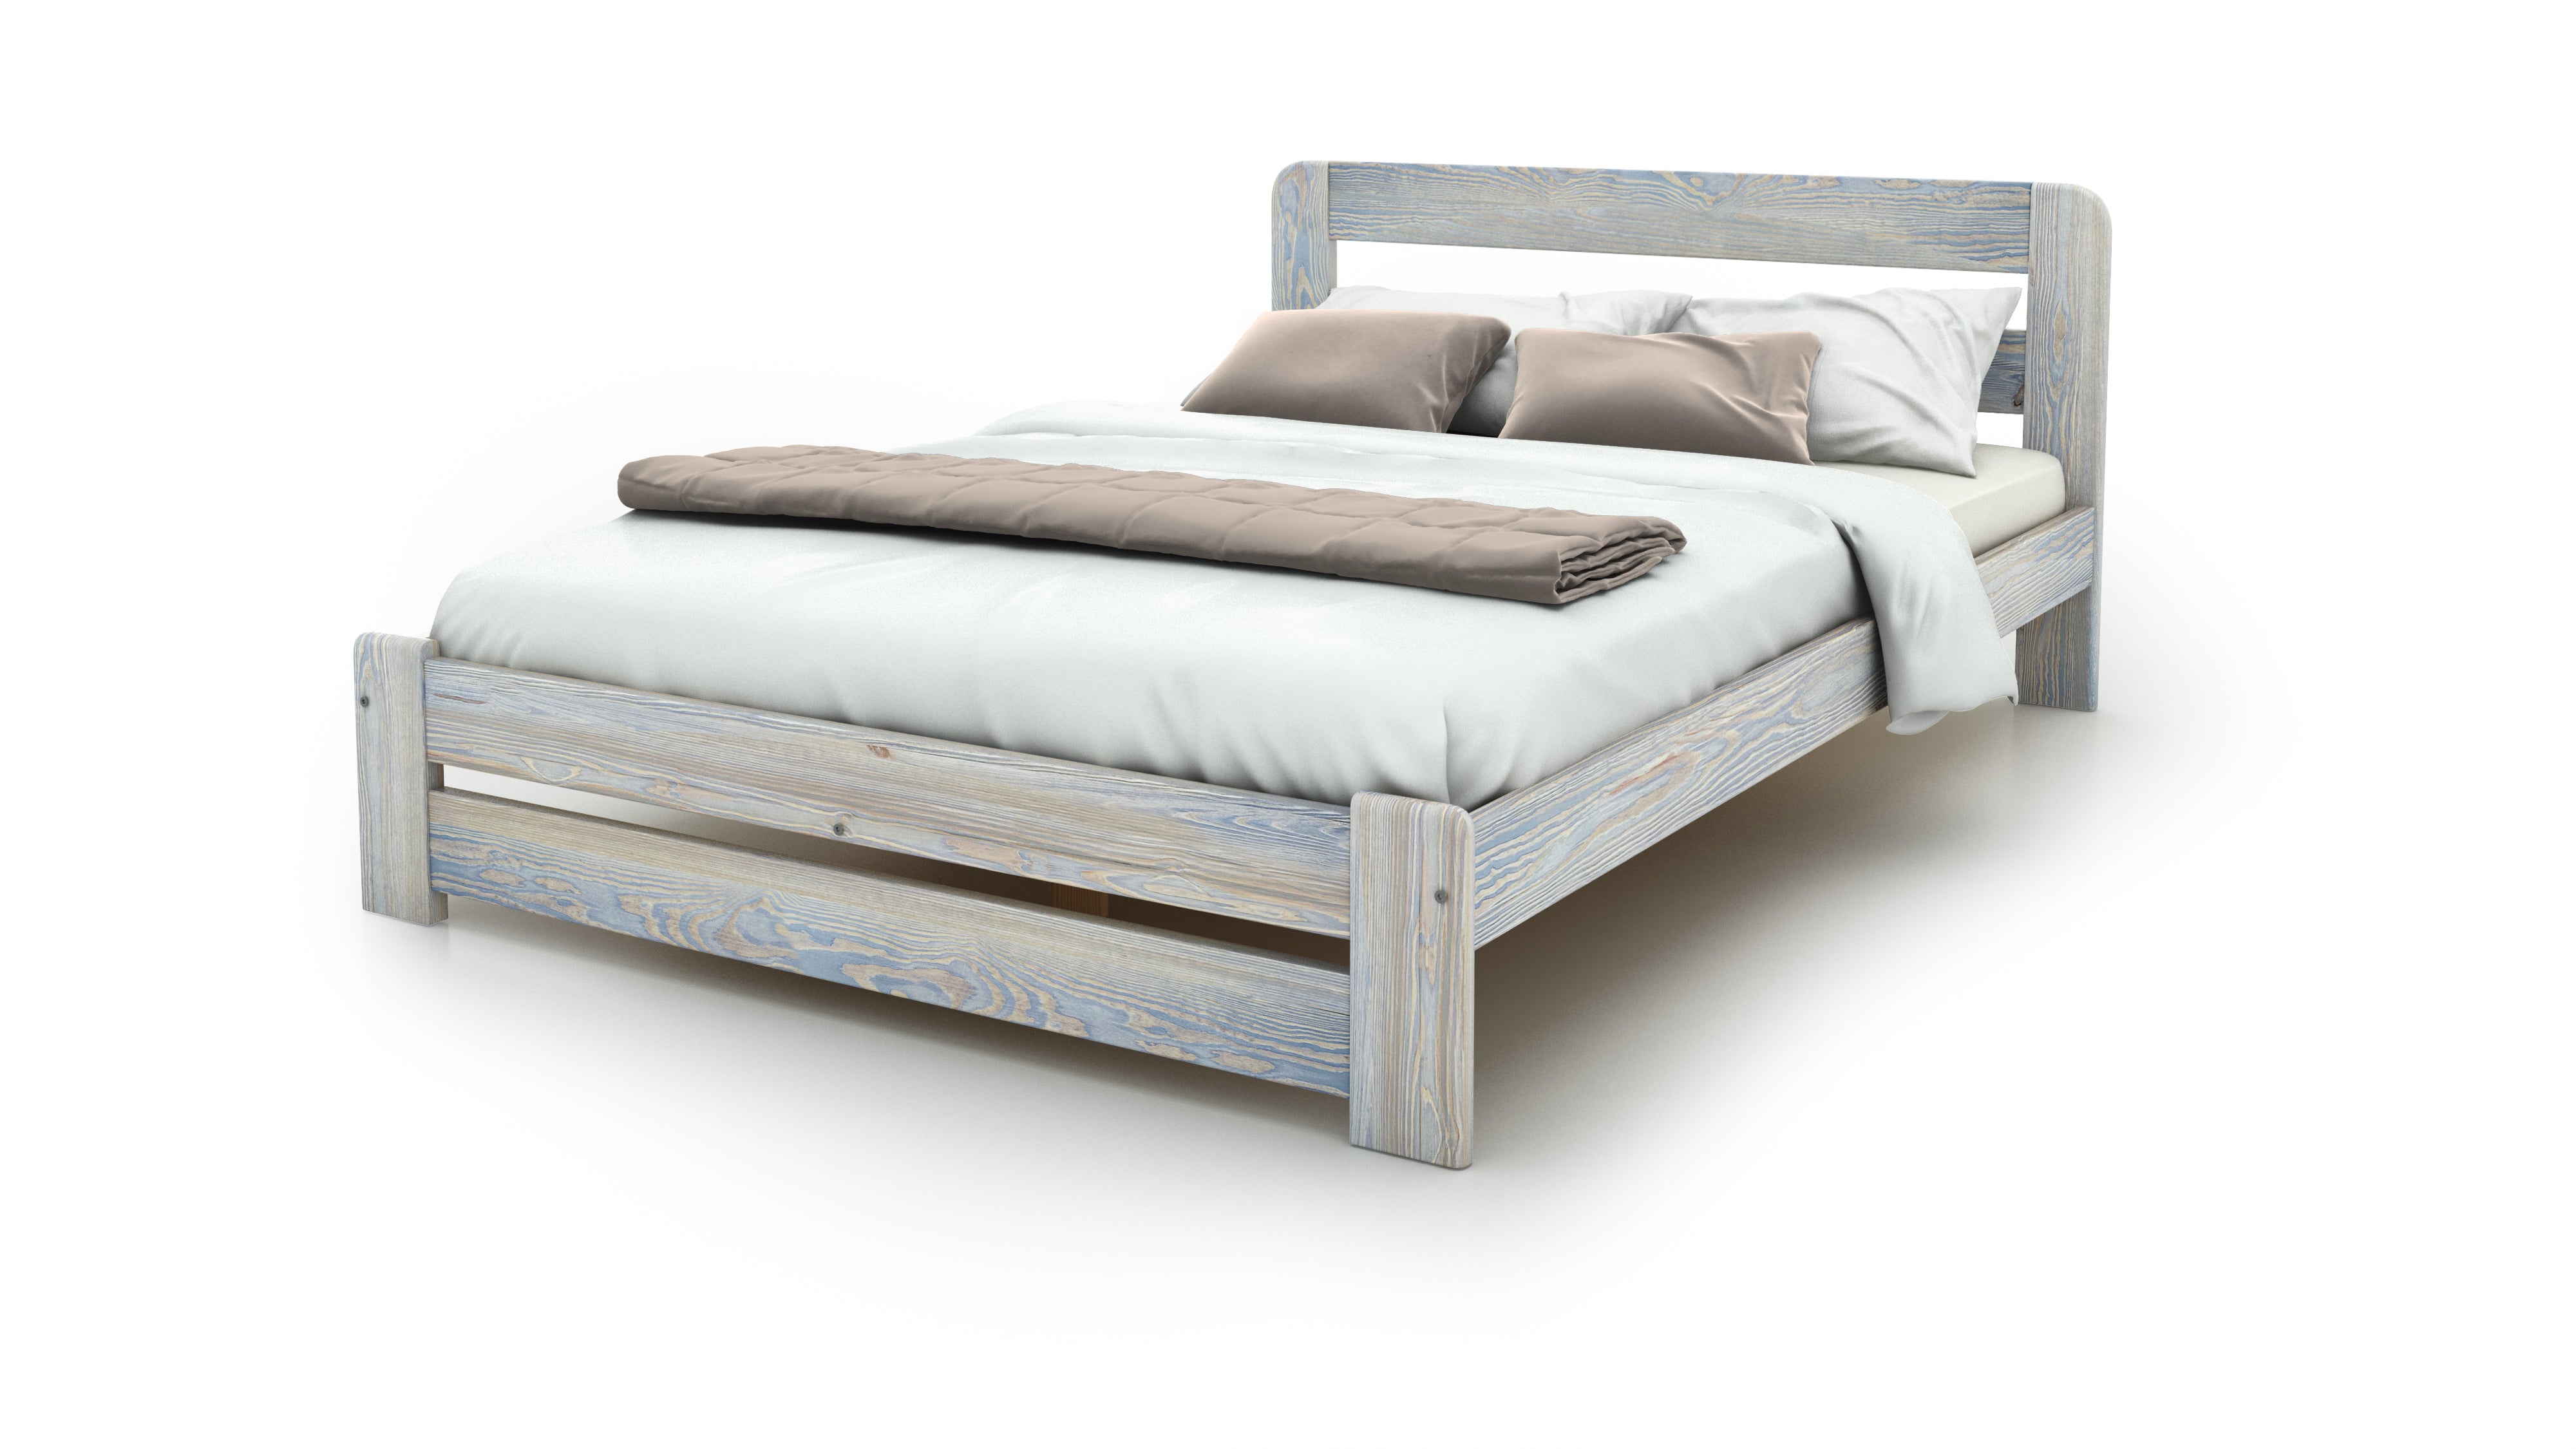 Wooden-bed-frame-Aurora-beds-online